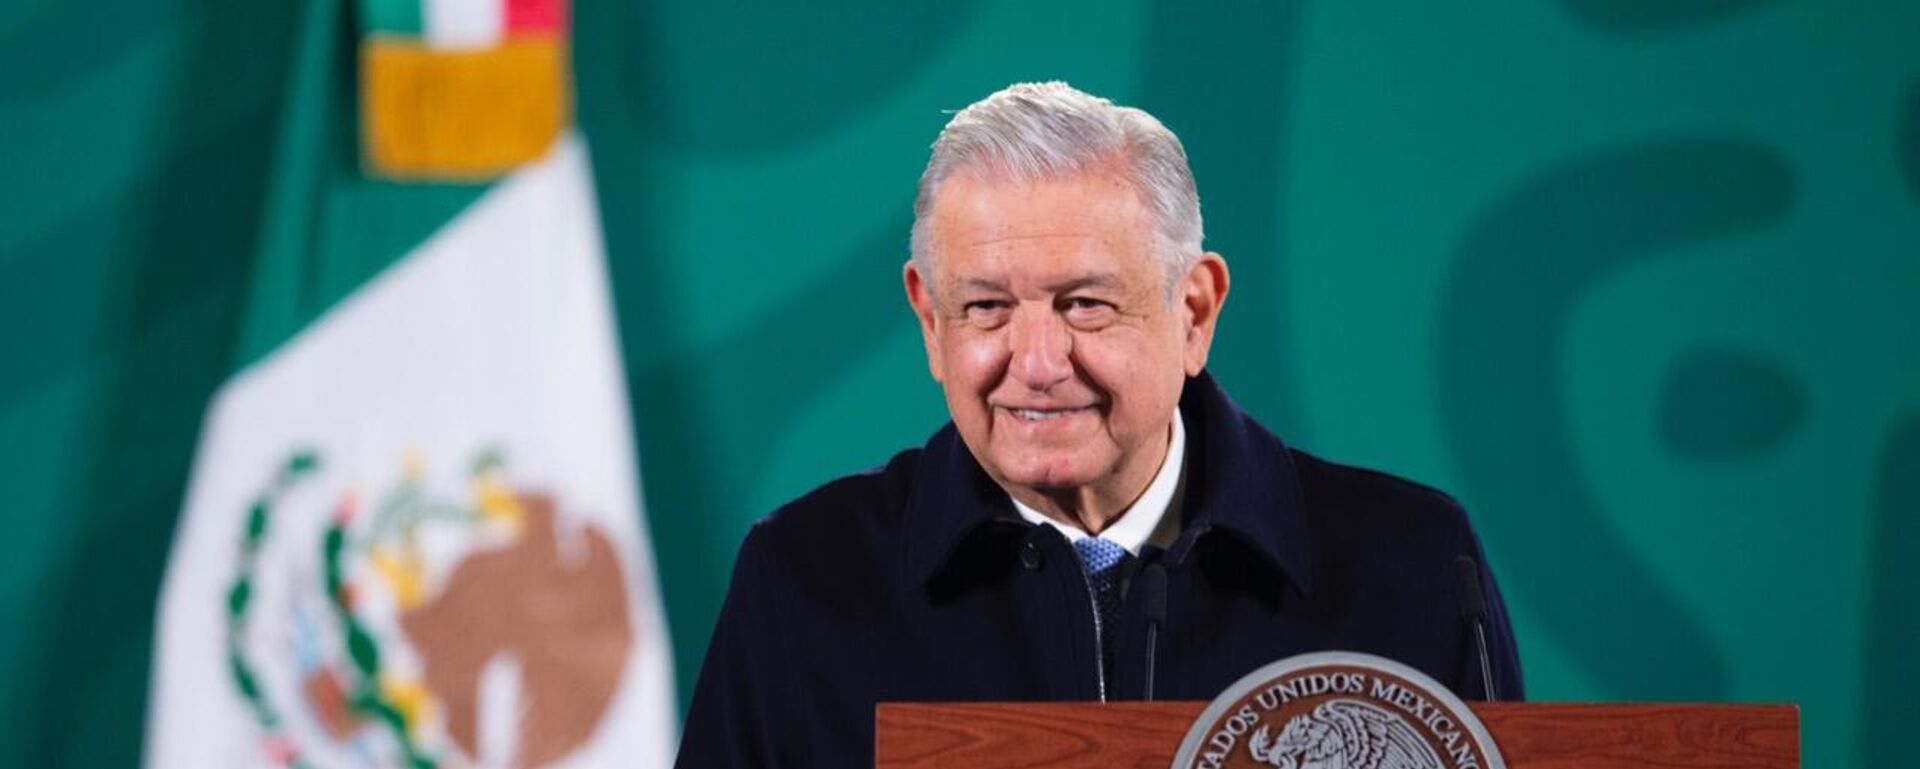 Andrés Manuel López Obrador, presidente de México - Sputnik Mundo, 1920, 22.12.2021